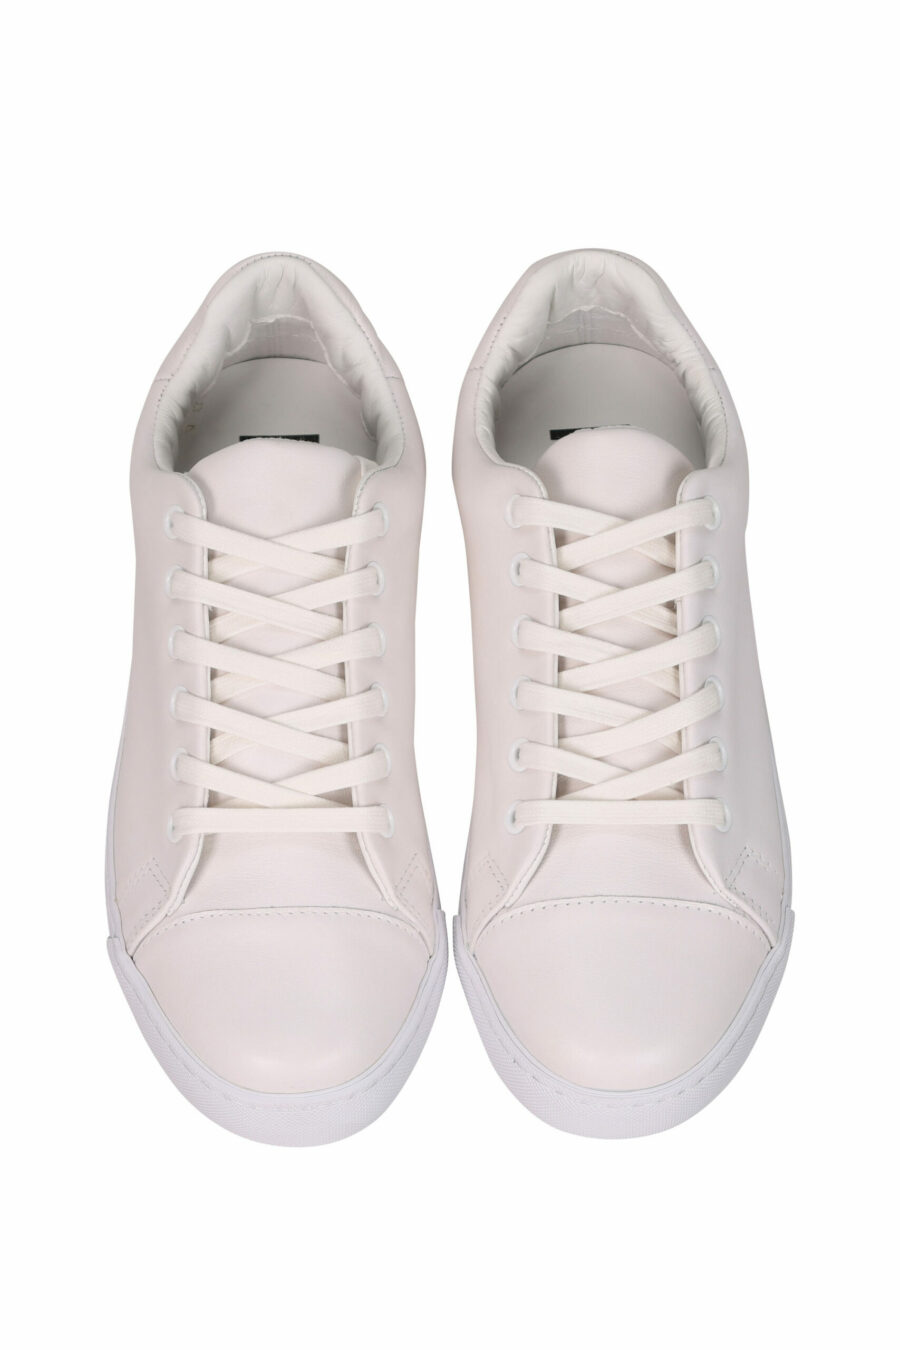 Zapatillas blancas "vulc25" con suela negra y logo en goma detrás - 8054388593519 4 scaled